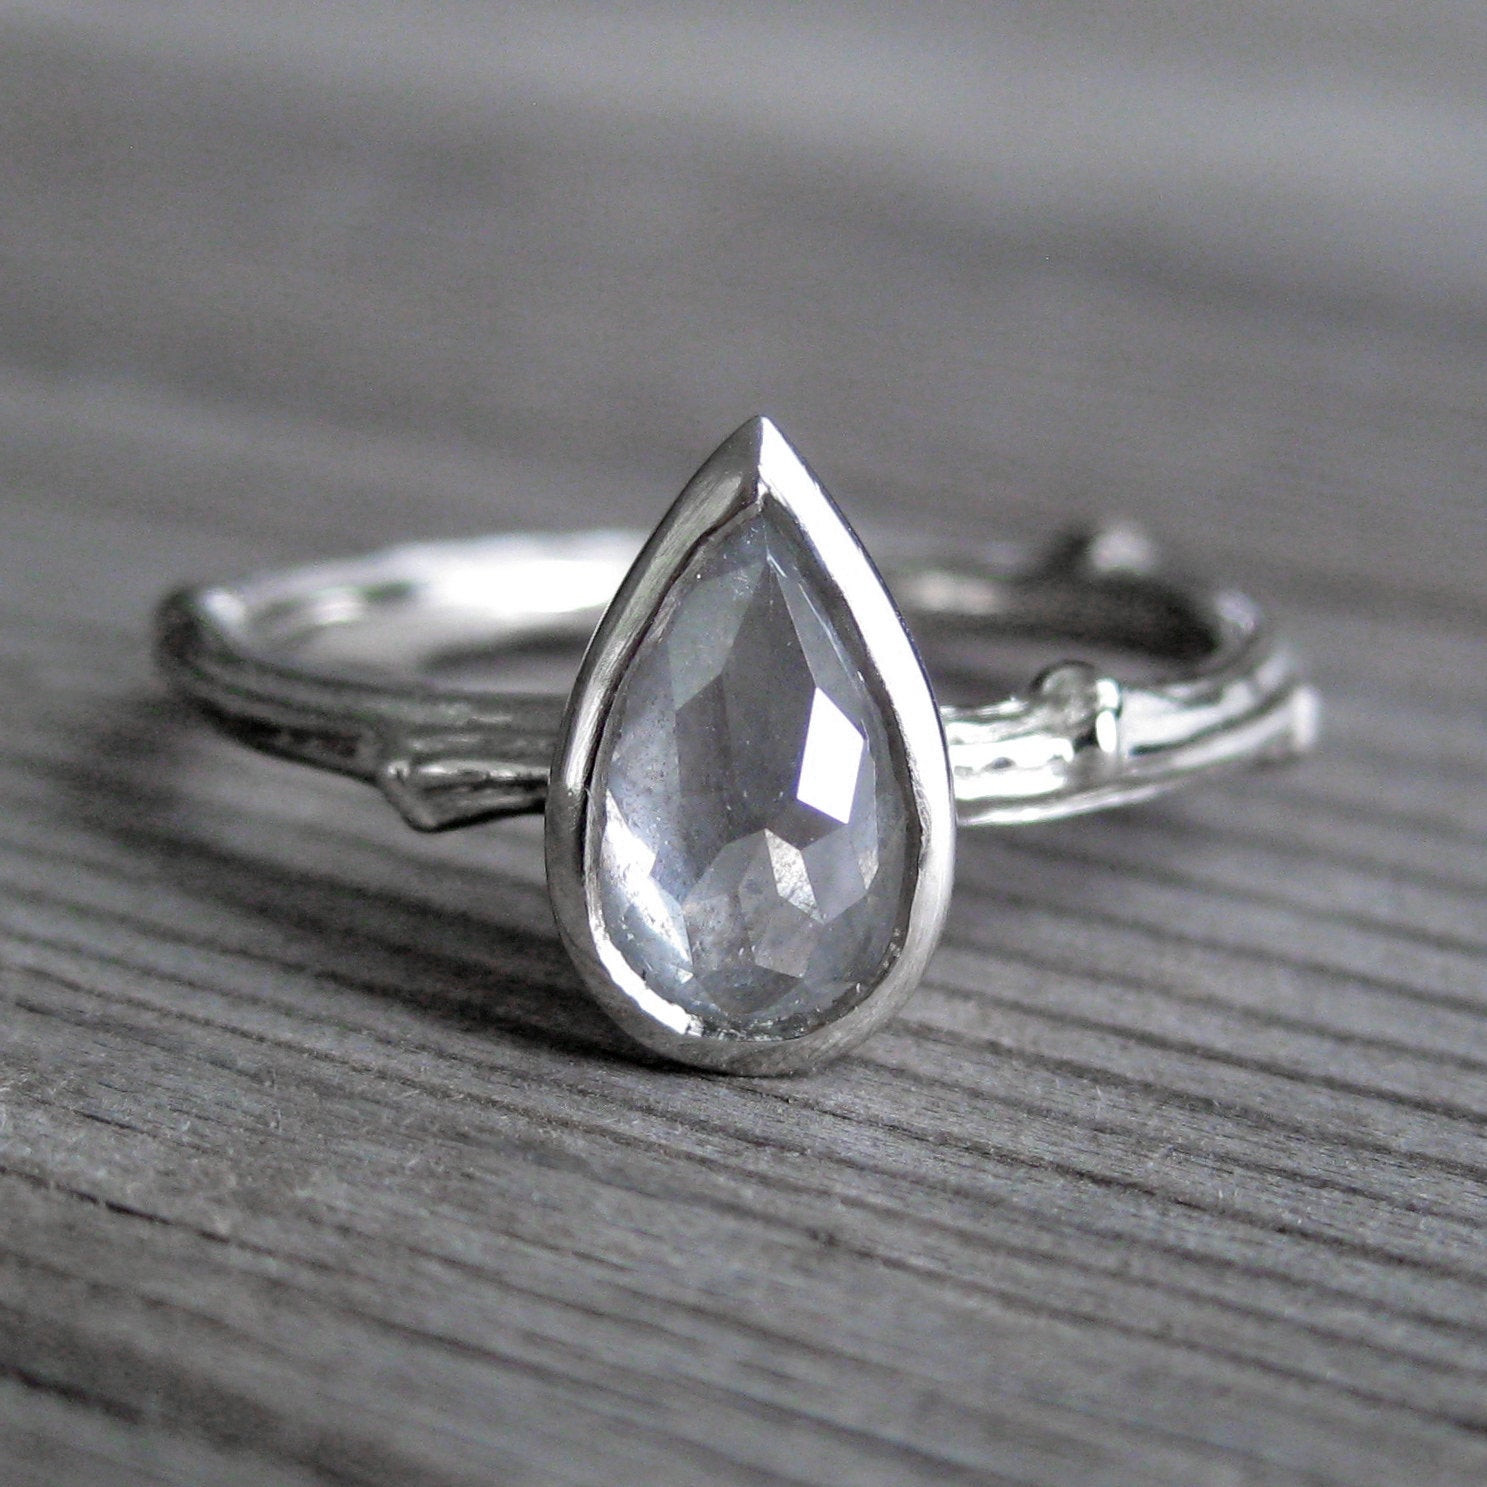 Rustic Diamond Engagement Ring
 Rose Cut Rustic Diamond Engagement Ring in White by